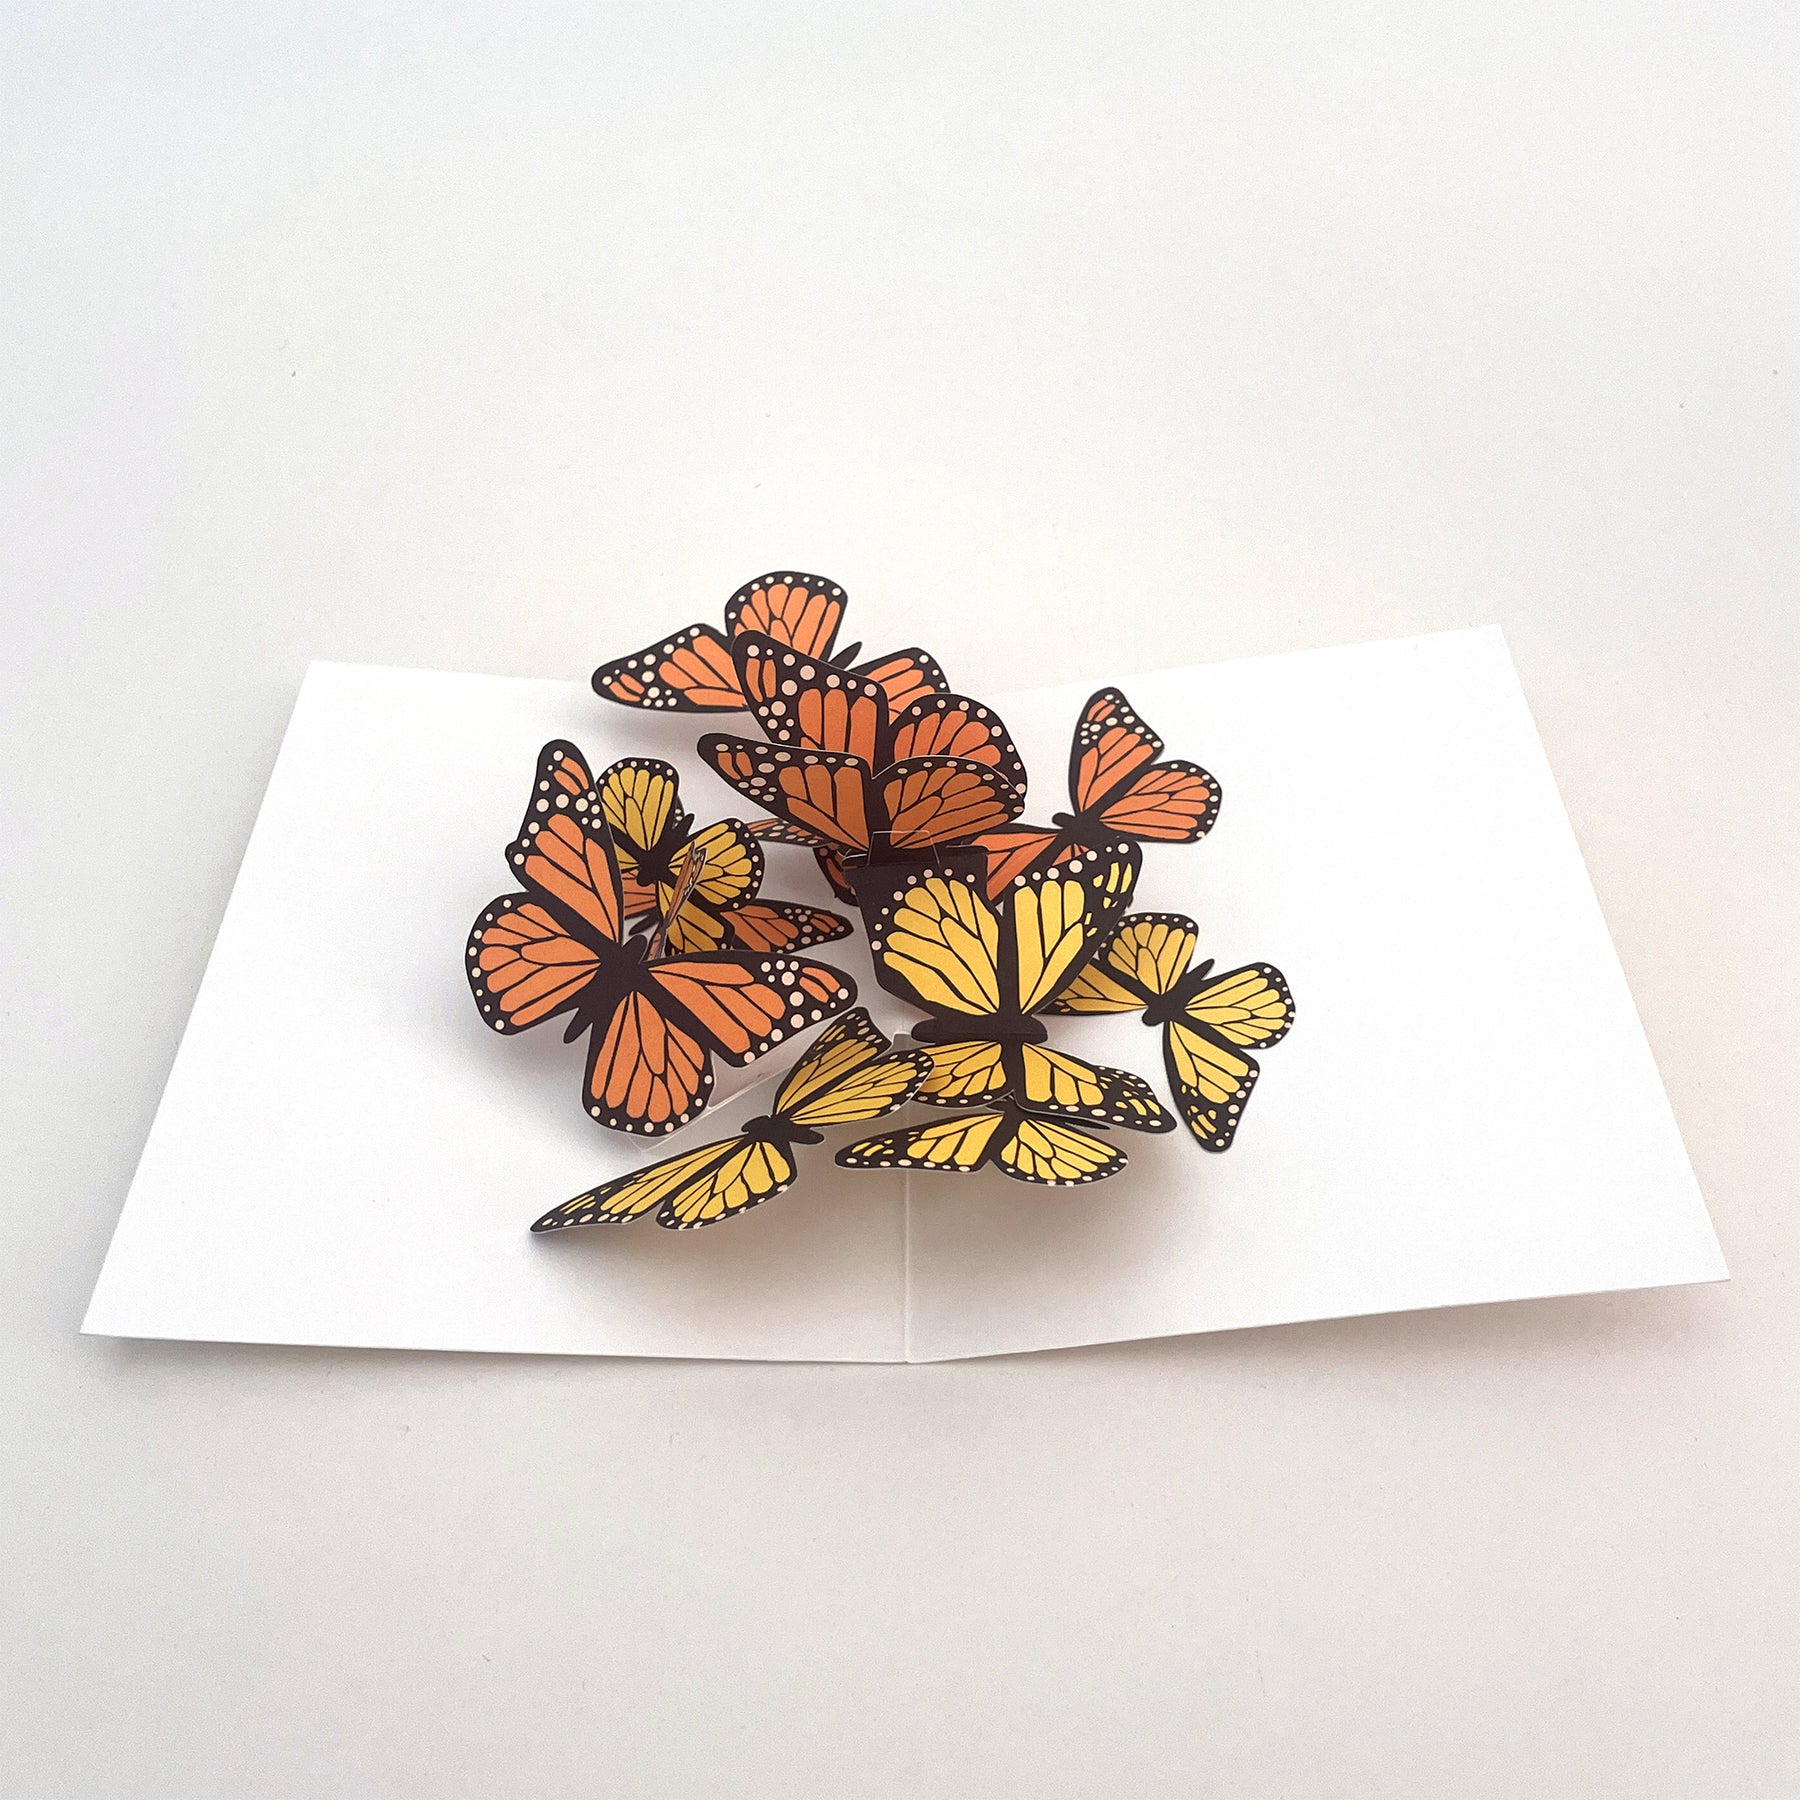 IC Design, Maike Biederstaedt Beautiful Butterflies Pop Up Card, Notecard,